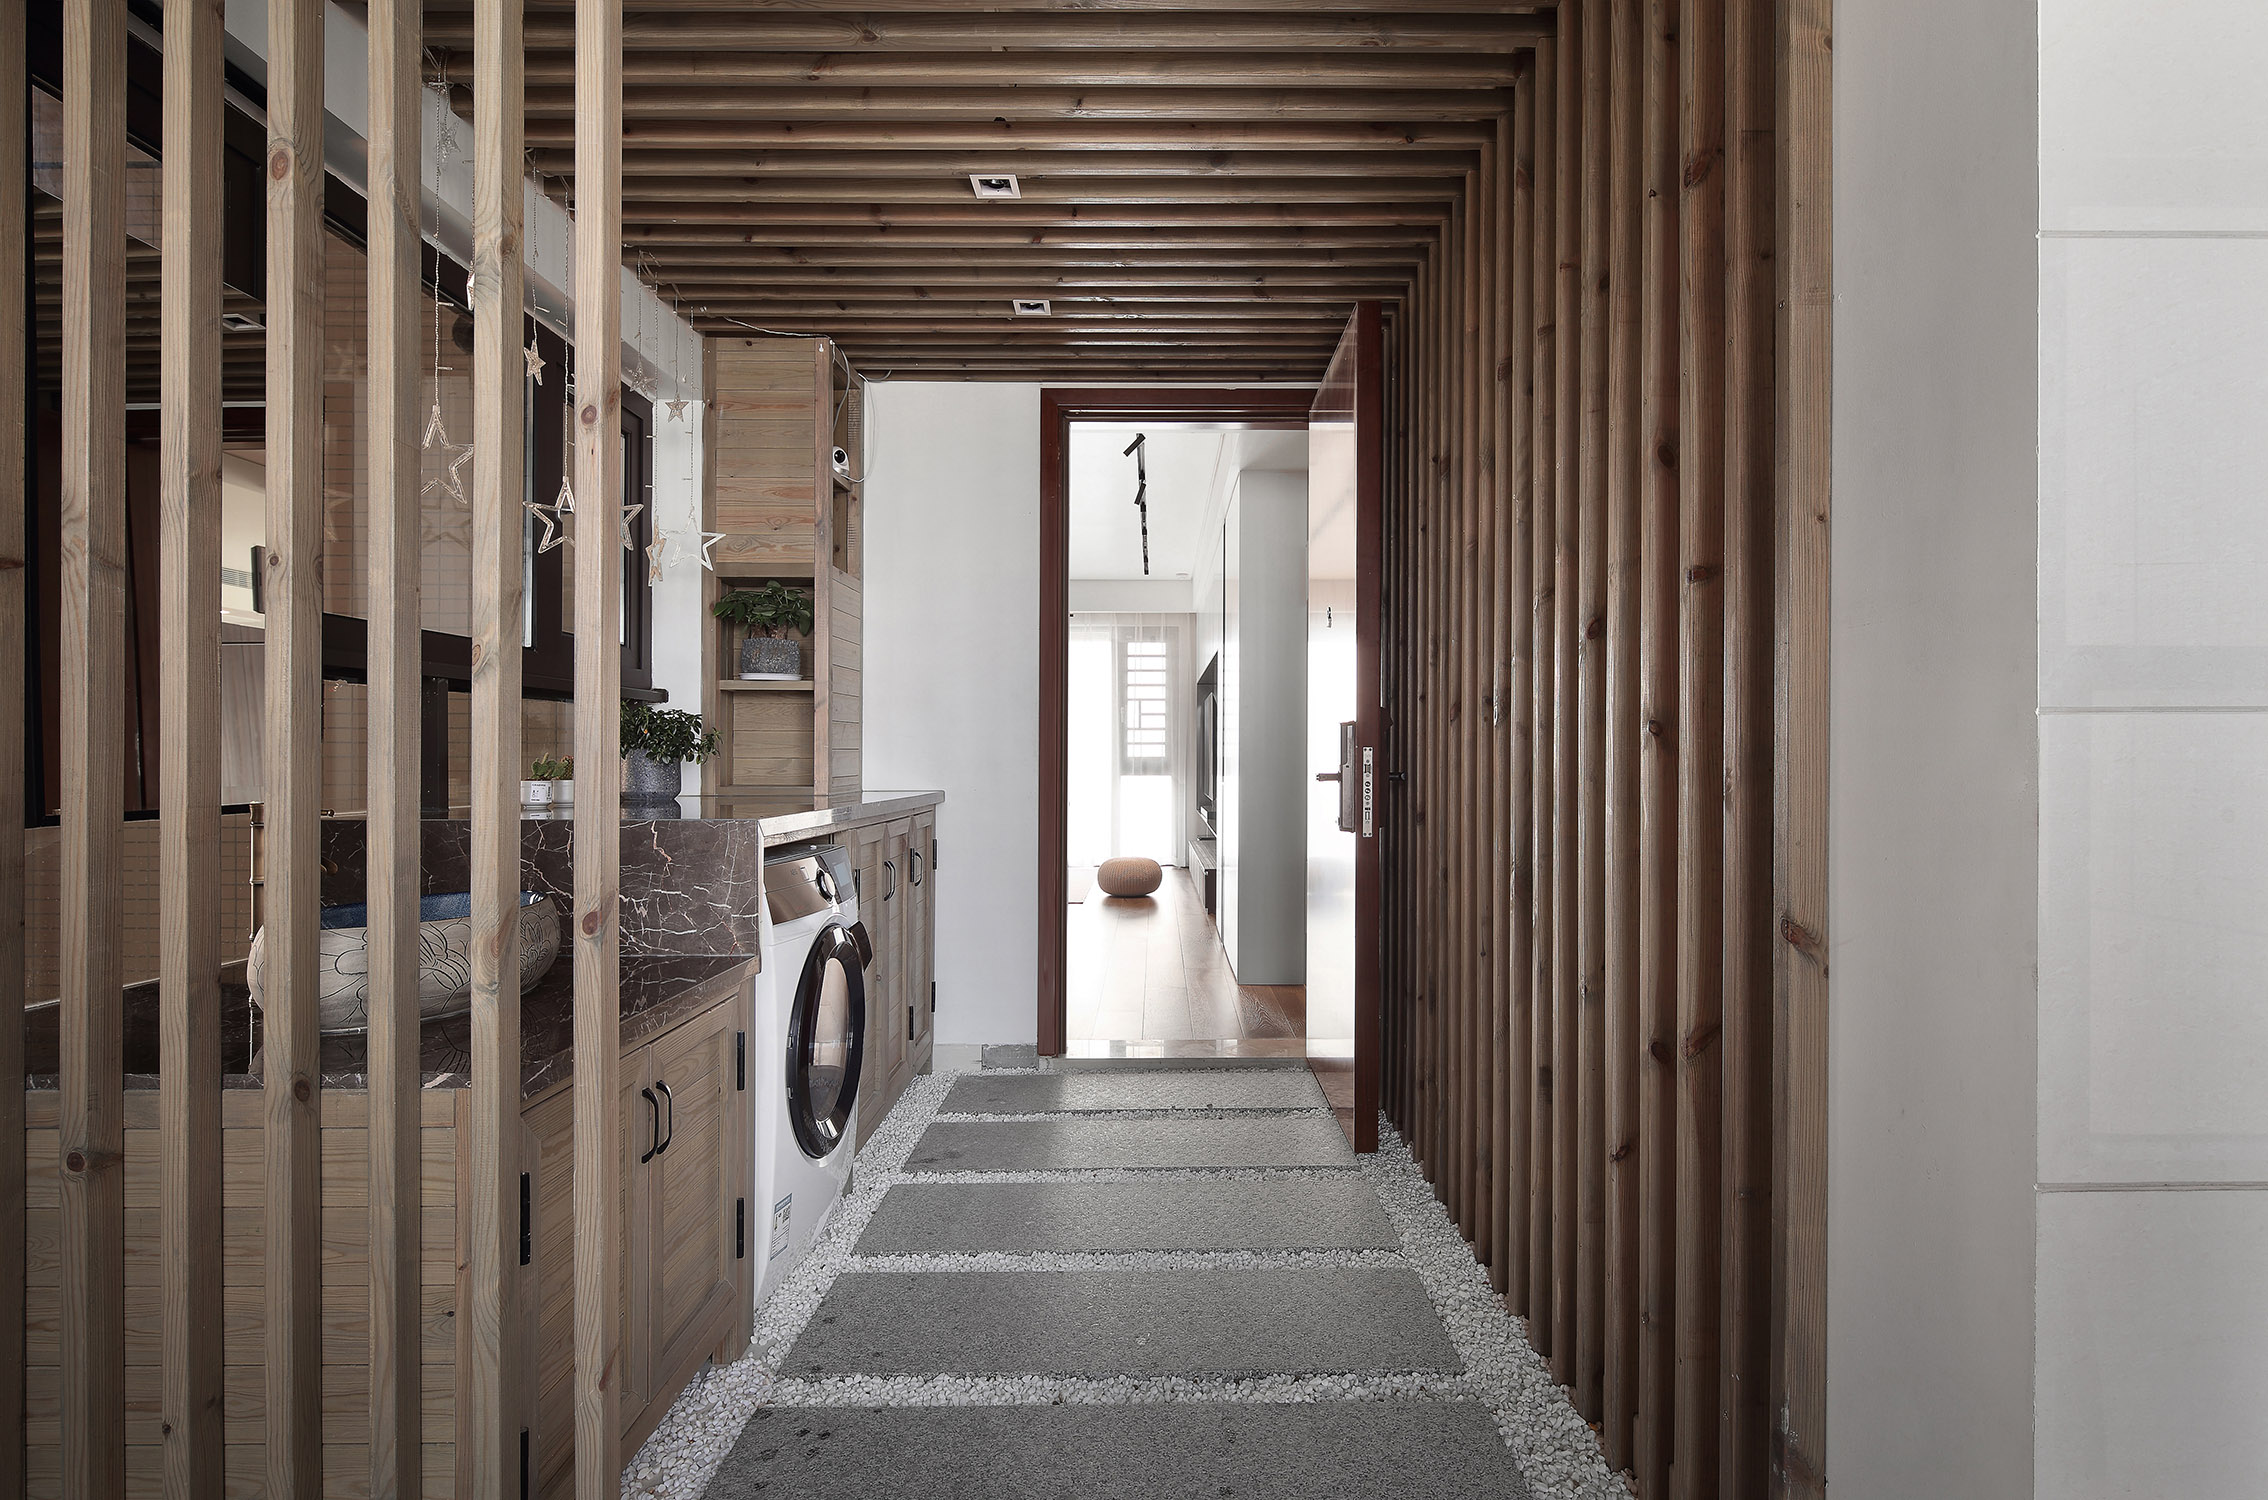 将玄关处打造为洗衣房是非常新颖的动线设计，木质调空间舒适大气。